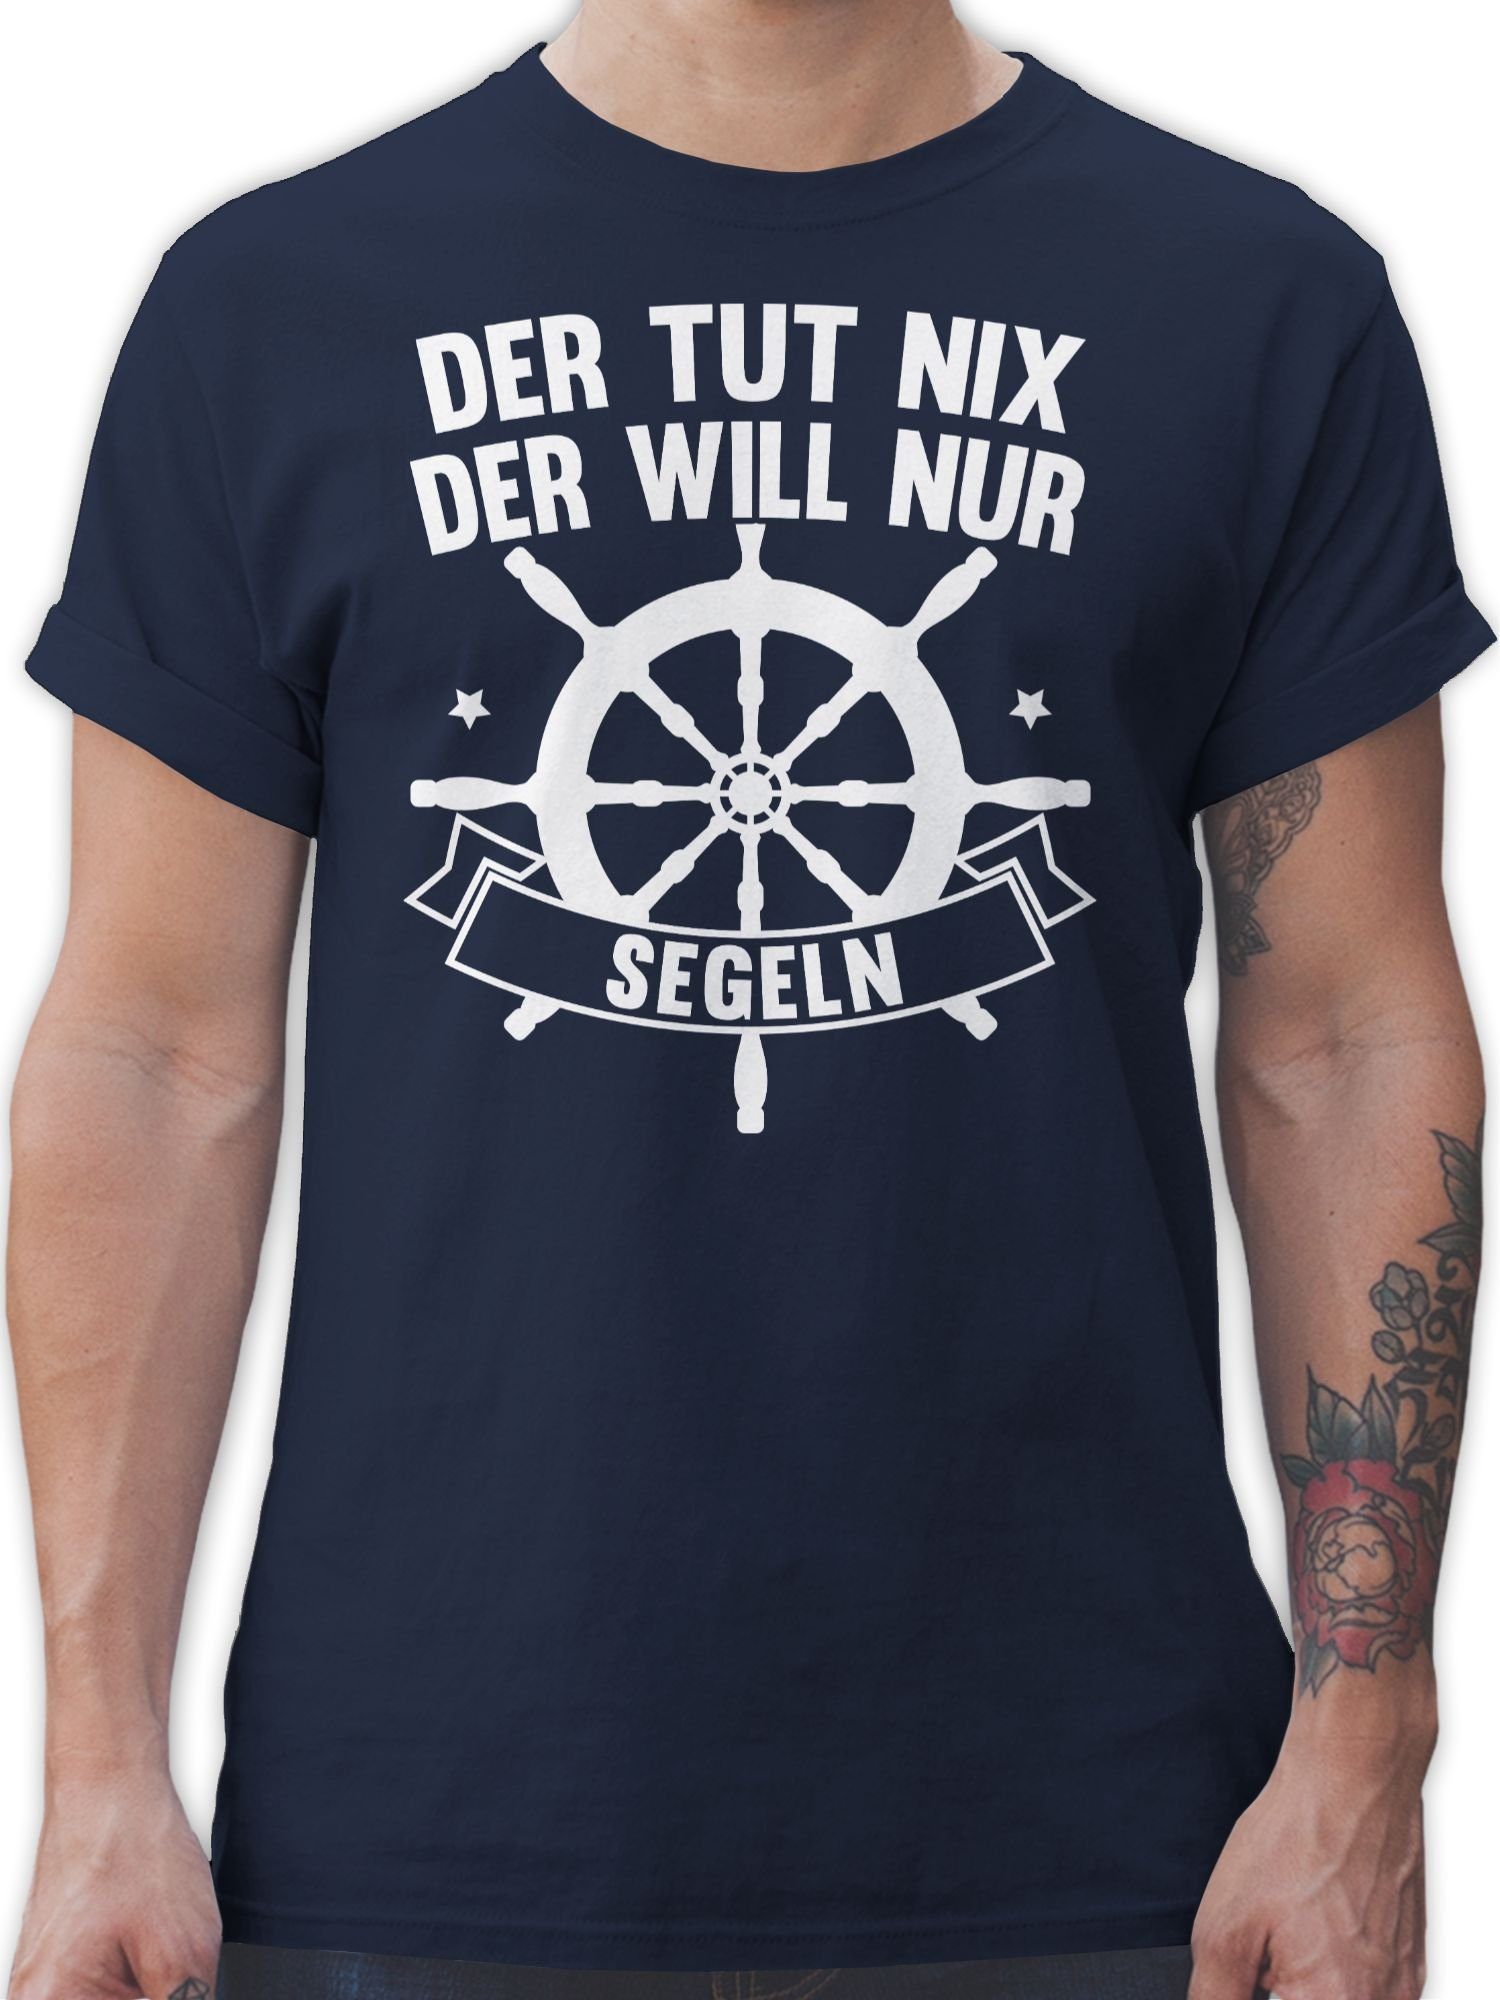 der Statement Shirtracer nix nur mit T-Shirt 1 will Navy tut Sprüche Spruch segeln Blau Der